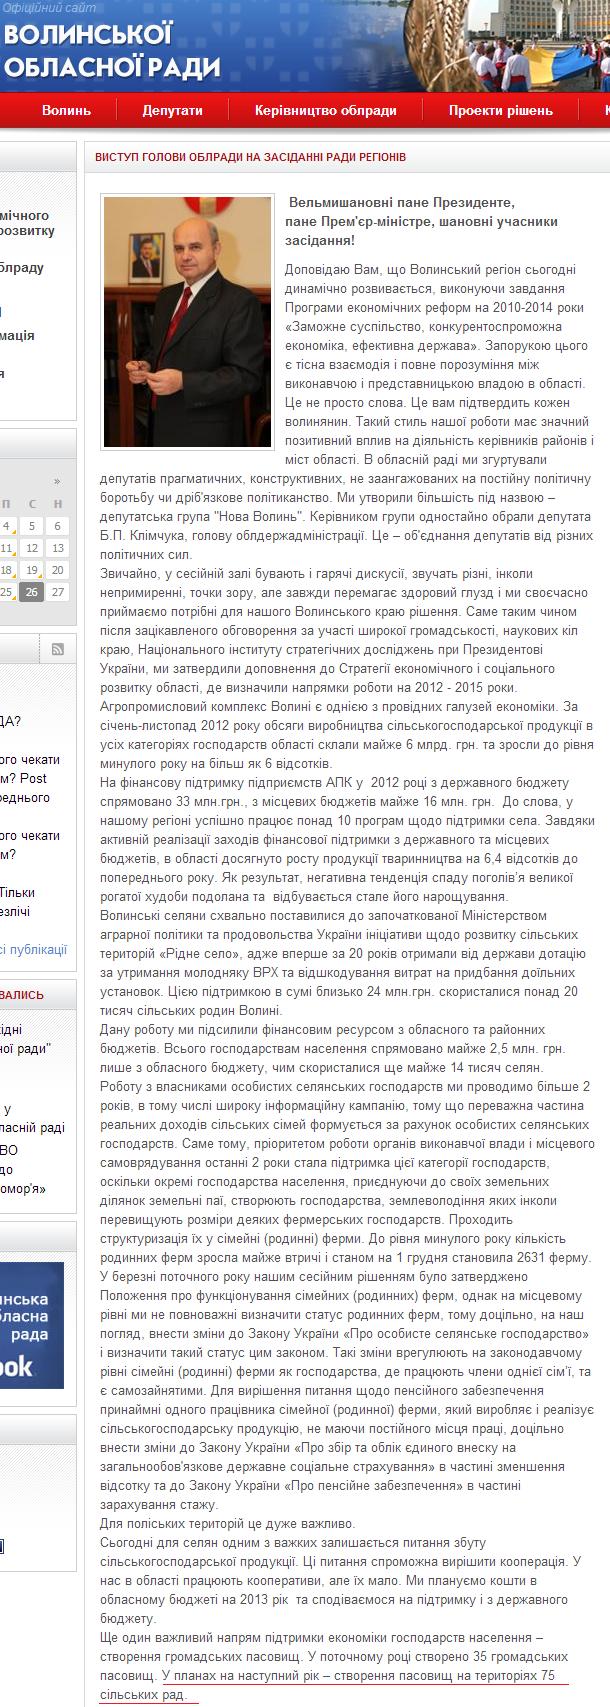 http://volynrada.gov.ua/news/vistup-golovi-oblradi-na-zasidanni-radi-regioniv